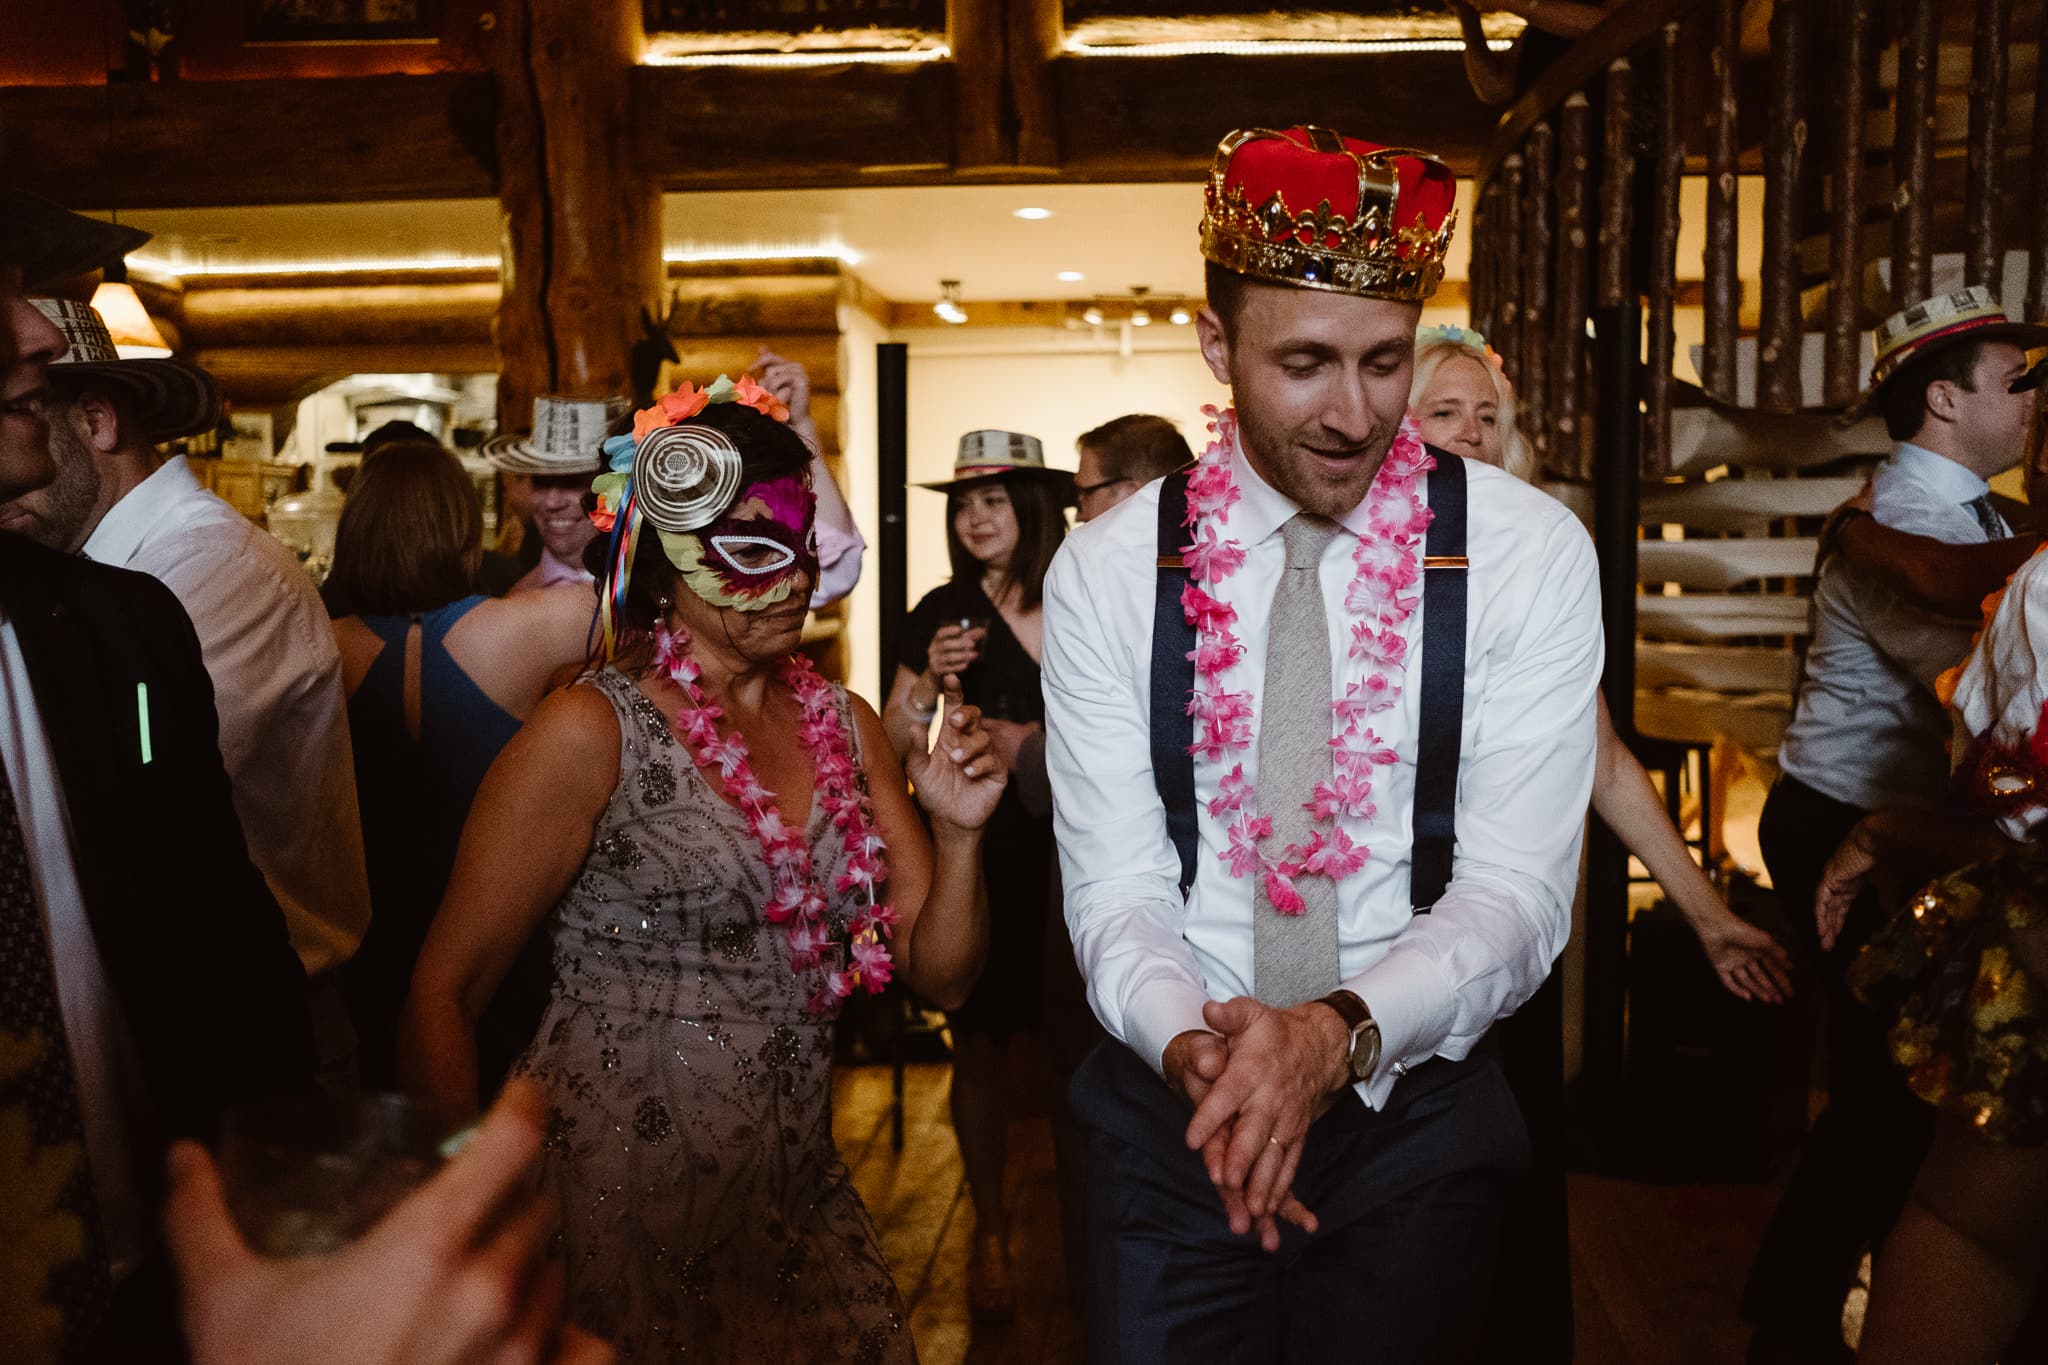 La hora loca reception dancing at Breckenridge Nordic Center wedding, Colorado wedding photographer